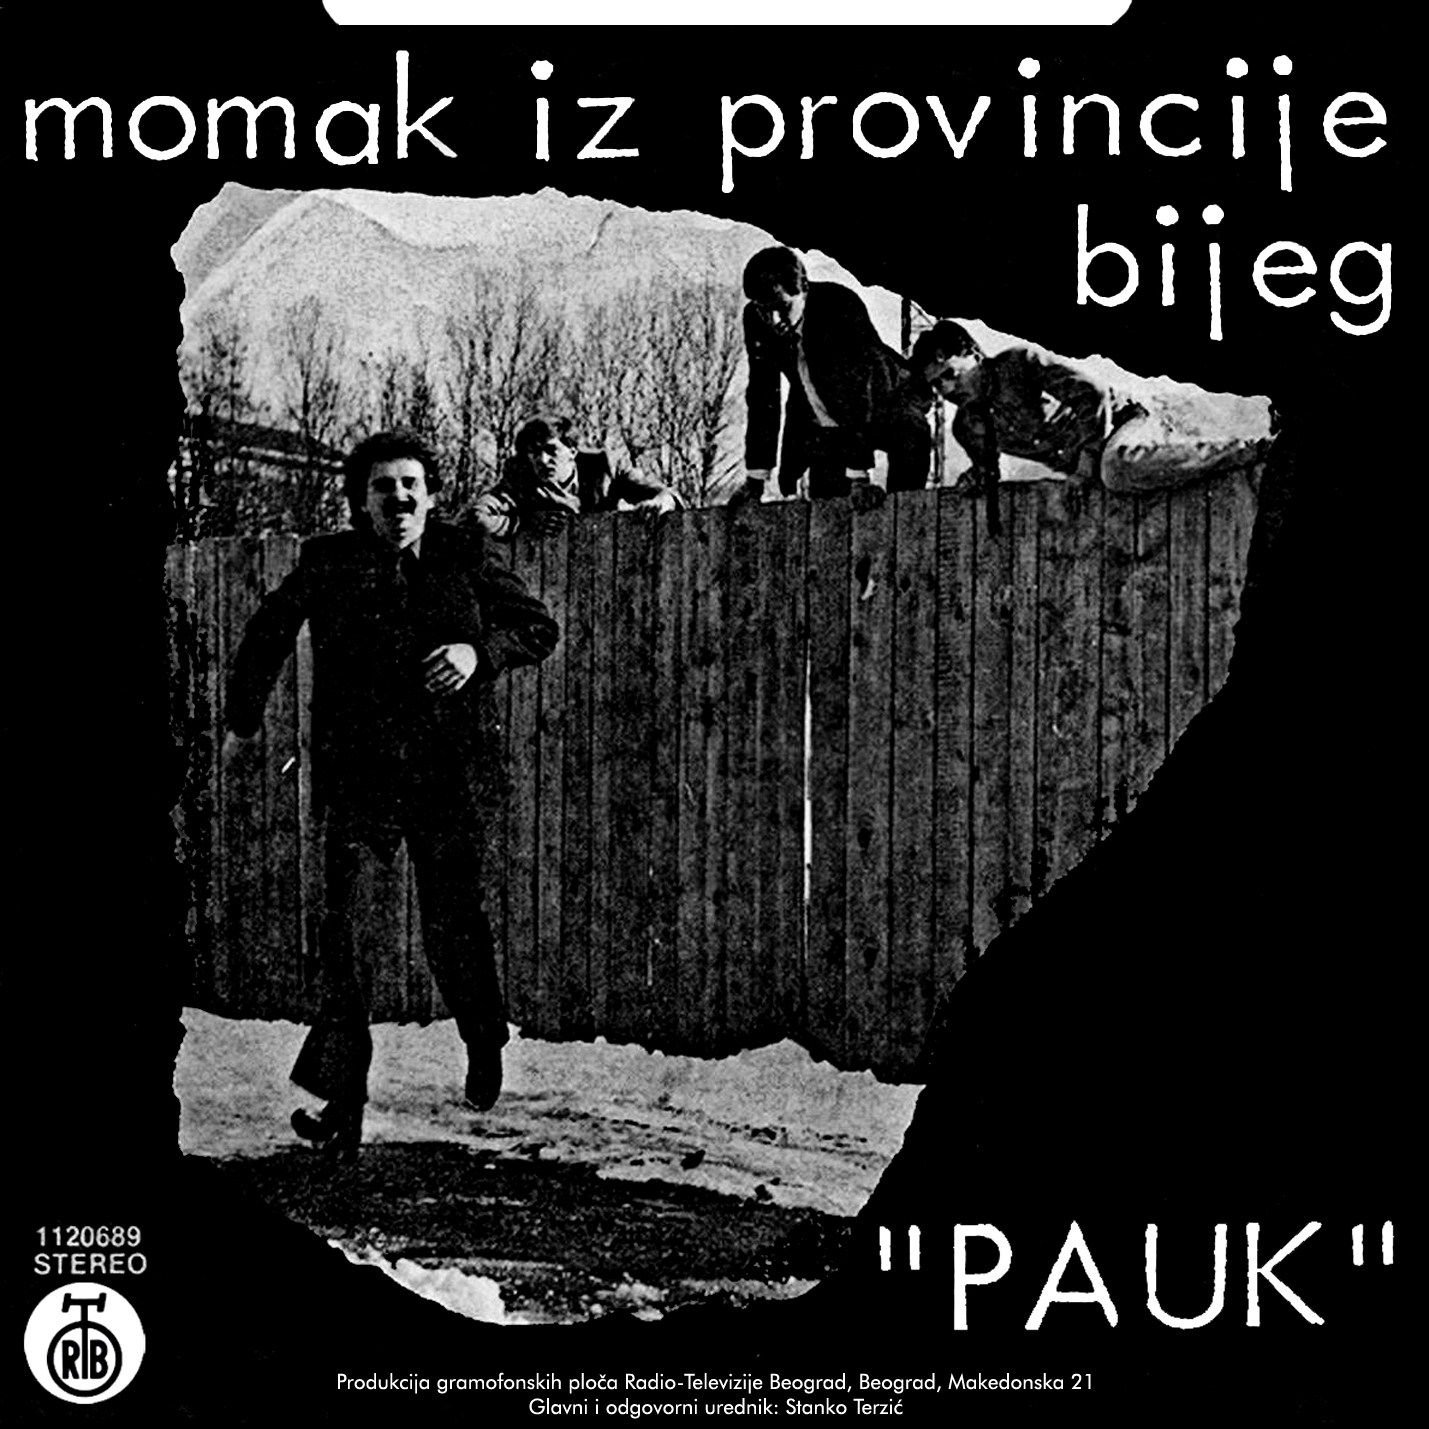 jugo-rock-forever-pauk-momak-iz-provincije-1981-single